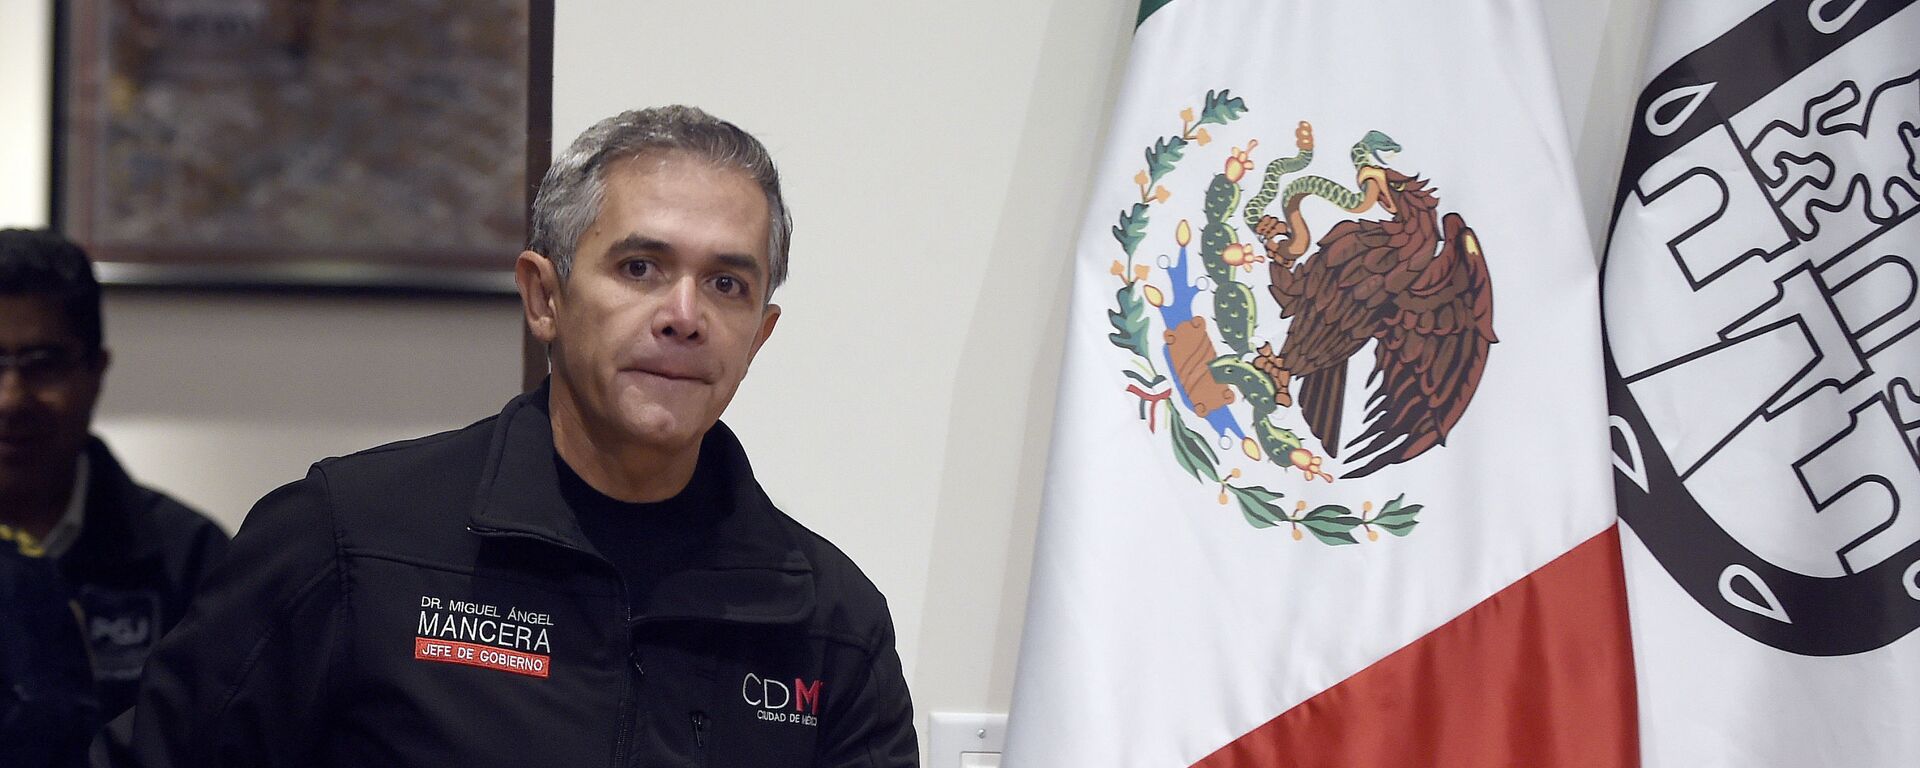 Miguel Ángel Mancera, exjefe del gobierno de la Ciudad de México (2012-2018) - Sputnik Mundo, 1920, 23.10.2020